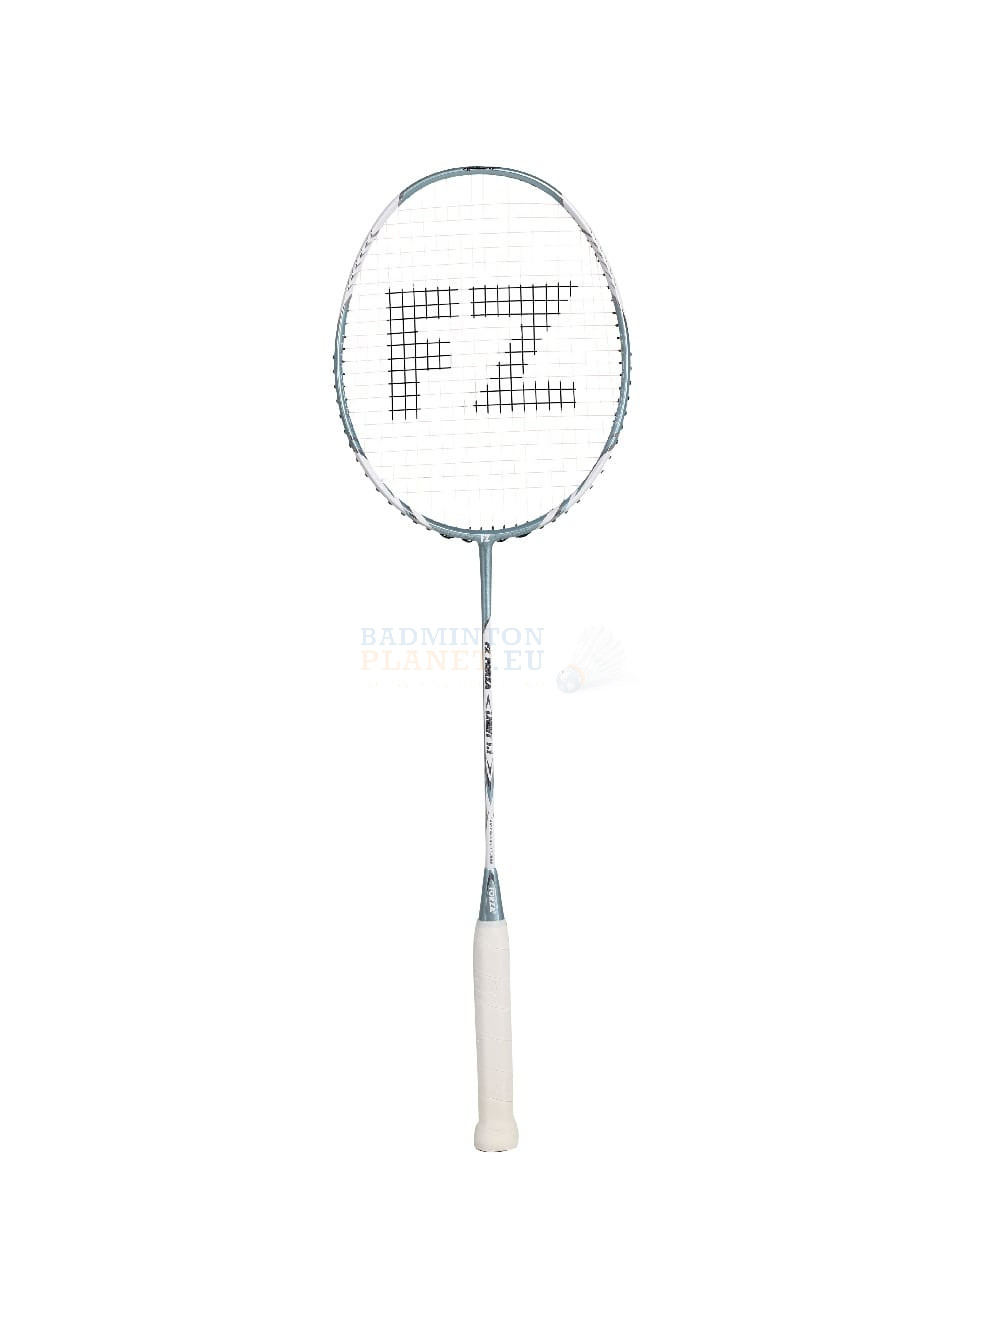 Afbestille morbiditet kapok FZ Forza Light 1.1 Blue badminton racket? - Badmintonplanet.eu